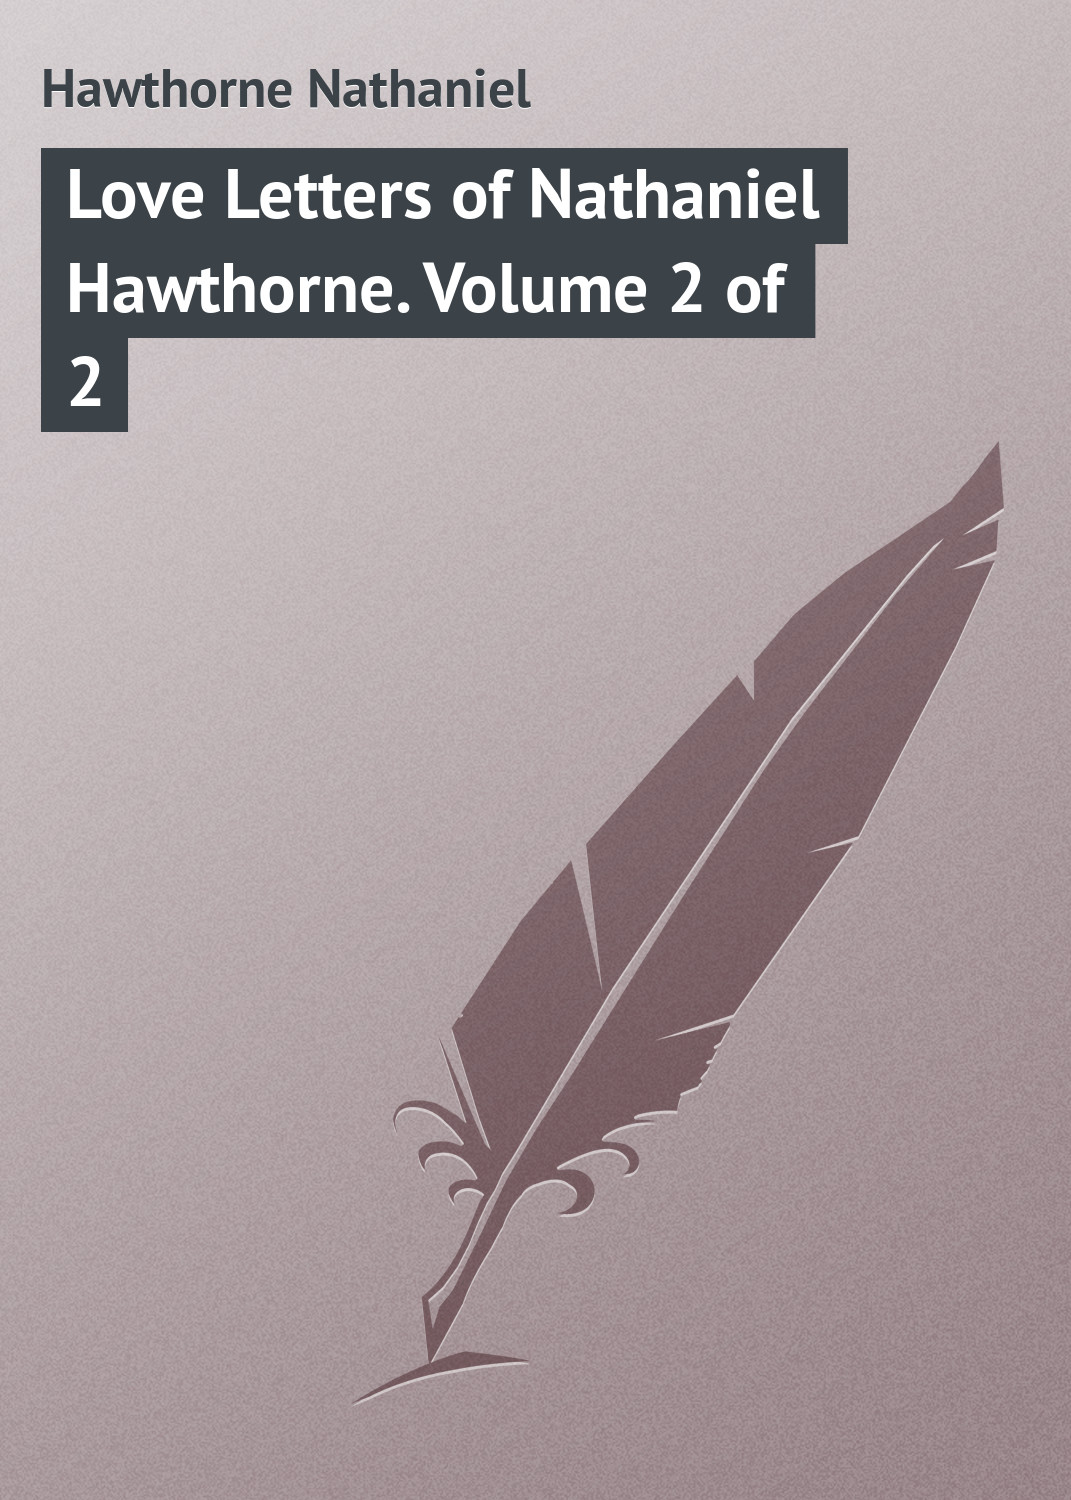 Книга Love Letters of Nathaniel Hawthorne. Volume 2 of 2 из серии , созданная Nathaniel Hawthorne, может относится к жанру Зарубежная классика, Зарубежные любовные романы. Стоимость электронной книги Love Letters of Nathaniel Hawthorne. Volume 2 of 2 с идентификатором 23149611 составляет 5.99 руб.